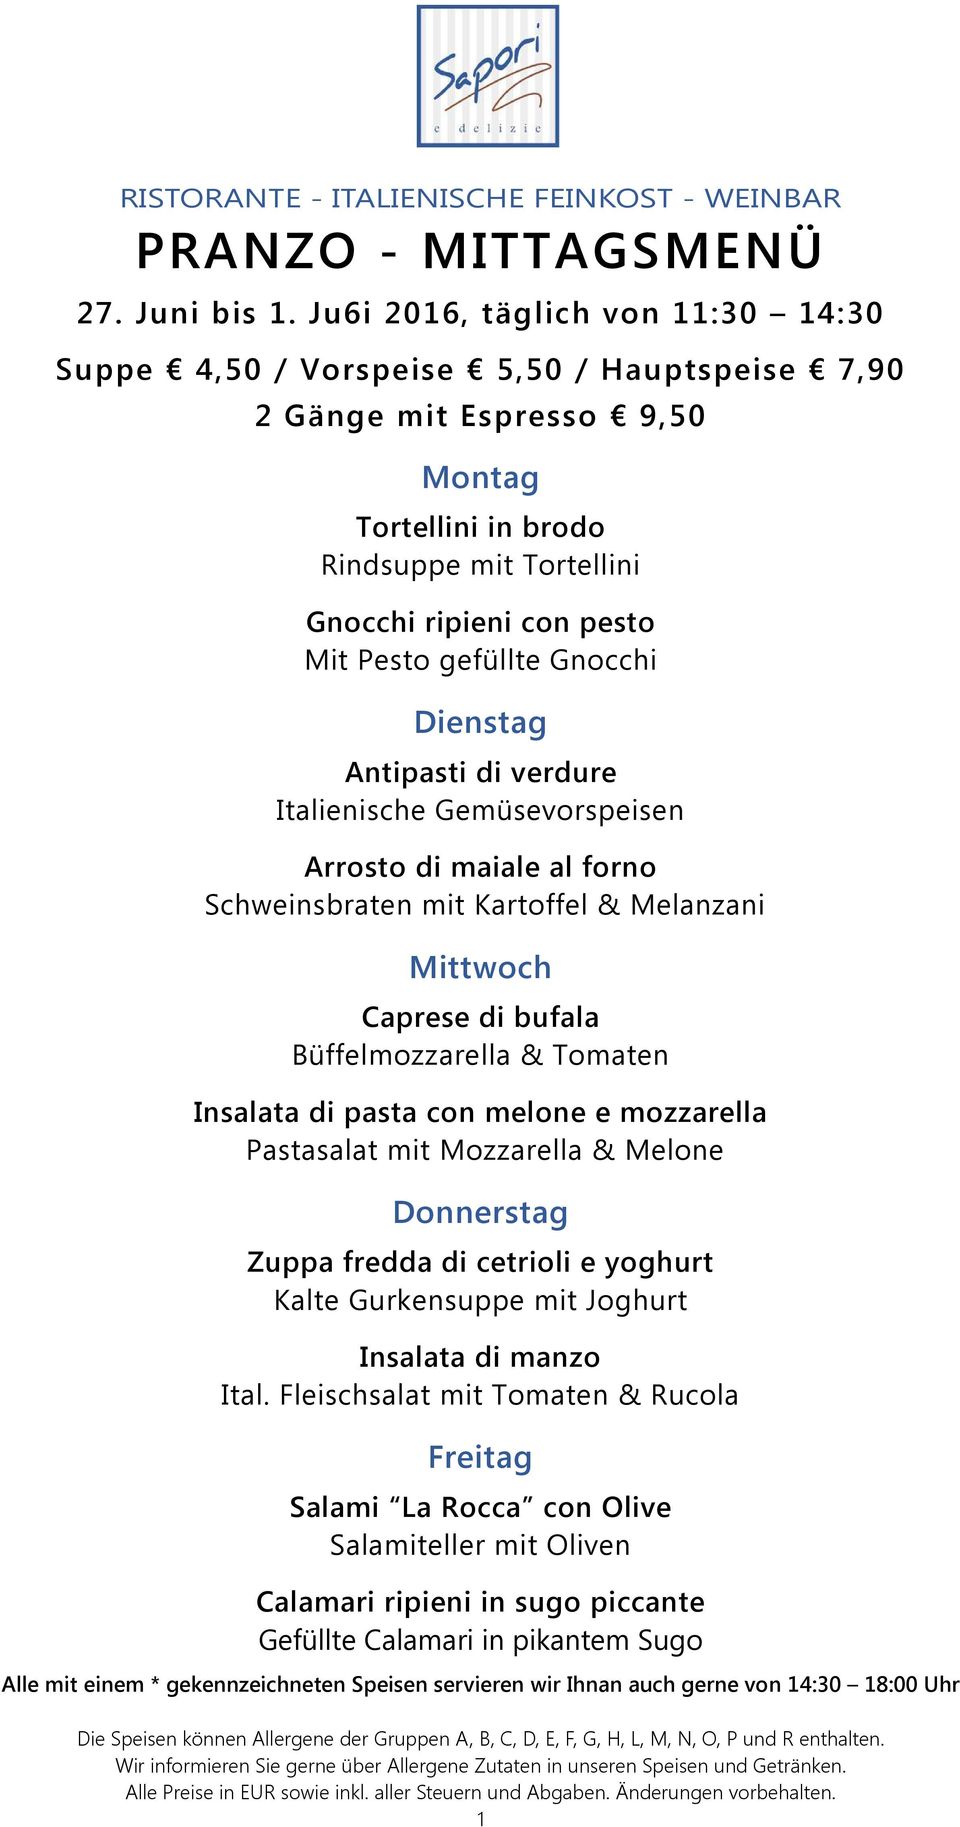 Pesto gefüllte Gnocchi Dienstag Antipasti di verdure Italienische Gemüsevorspeisen Arrosto di maiale al forno Schweinsbraten mit Kartoffel & Melanzani Mittwoch Caprese di bufala